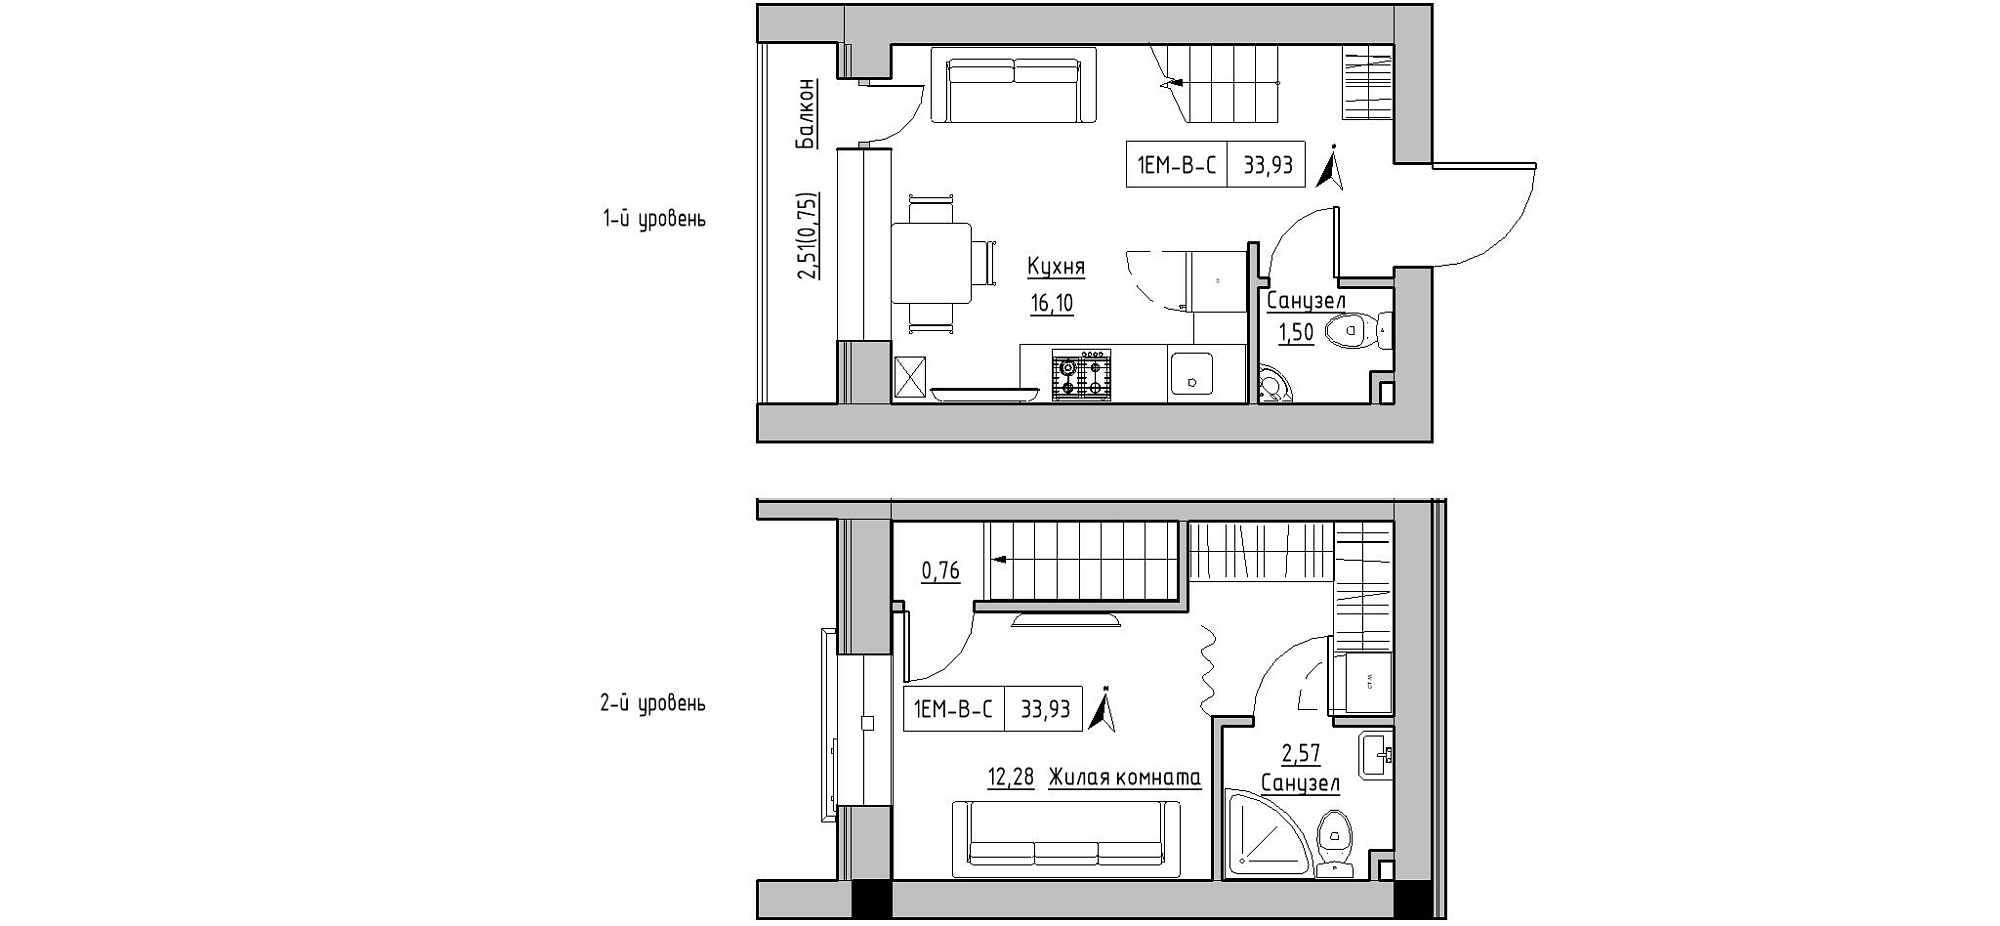 Planning 2-lvl flats area 33.93m2, KS-020-05/0012.